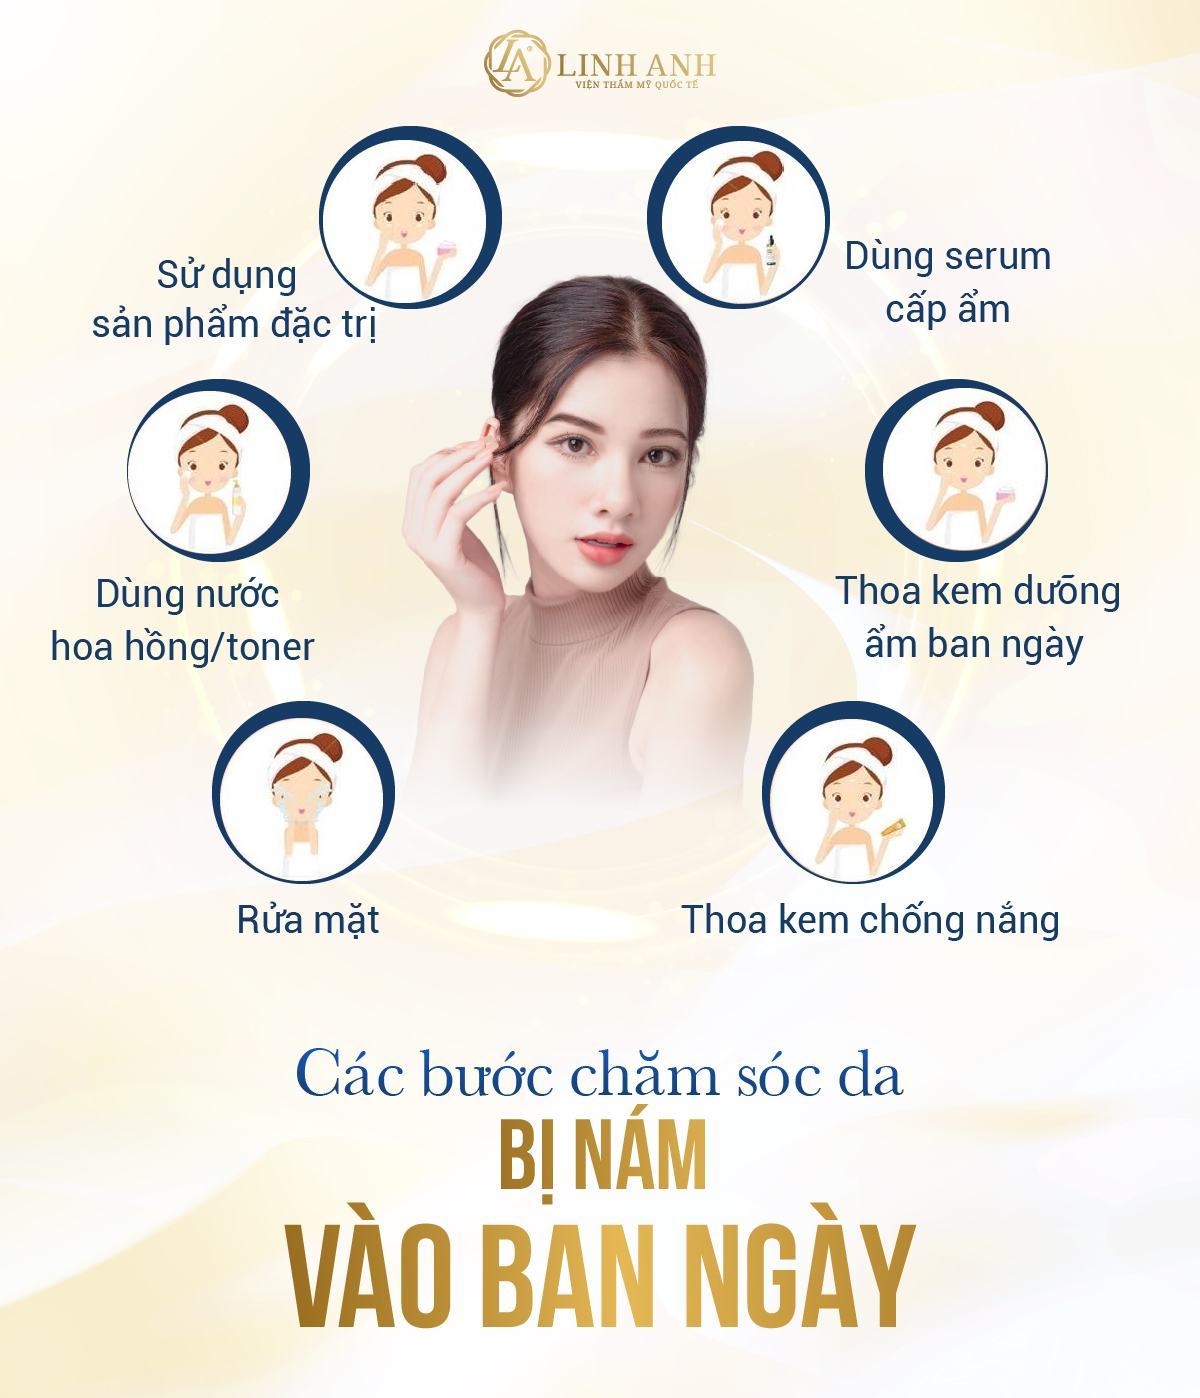 8 cách chăm sóc da mặt bị nám cực đơn giản, hiệu quả